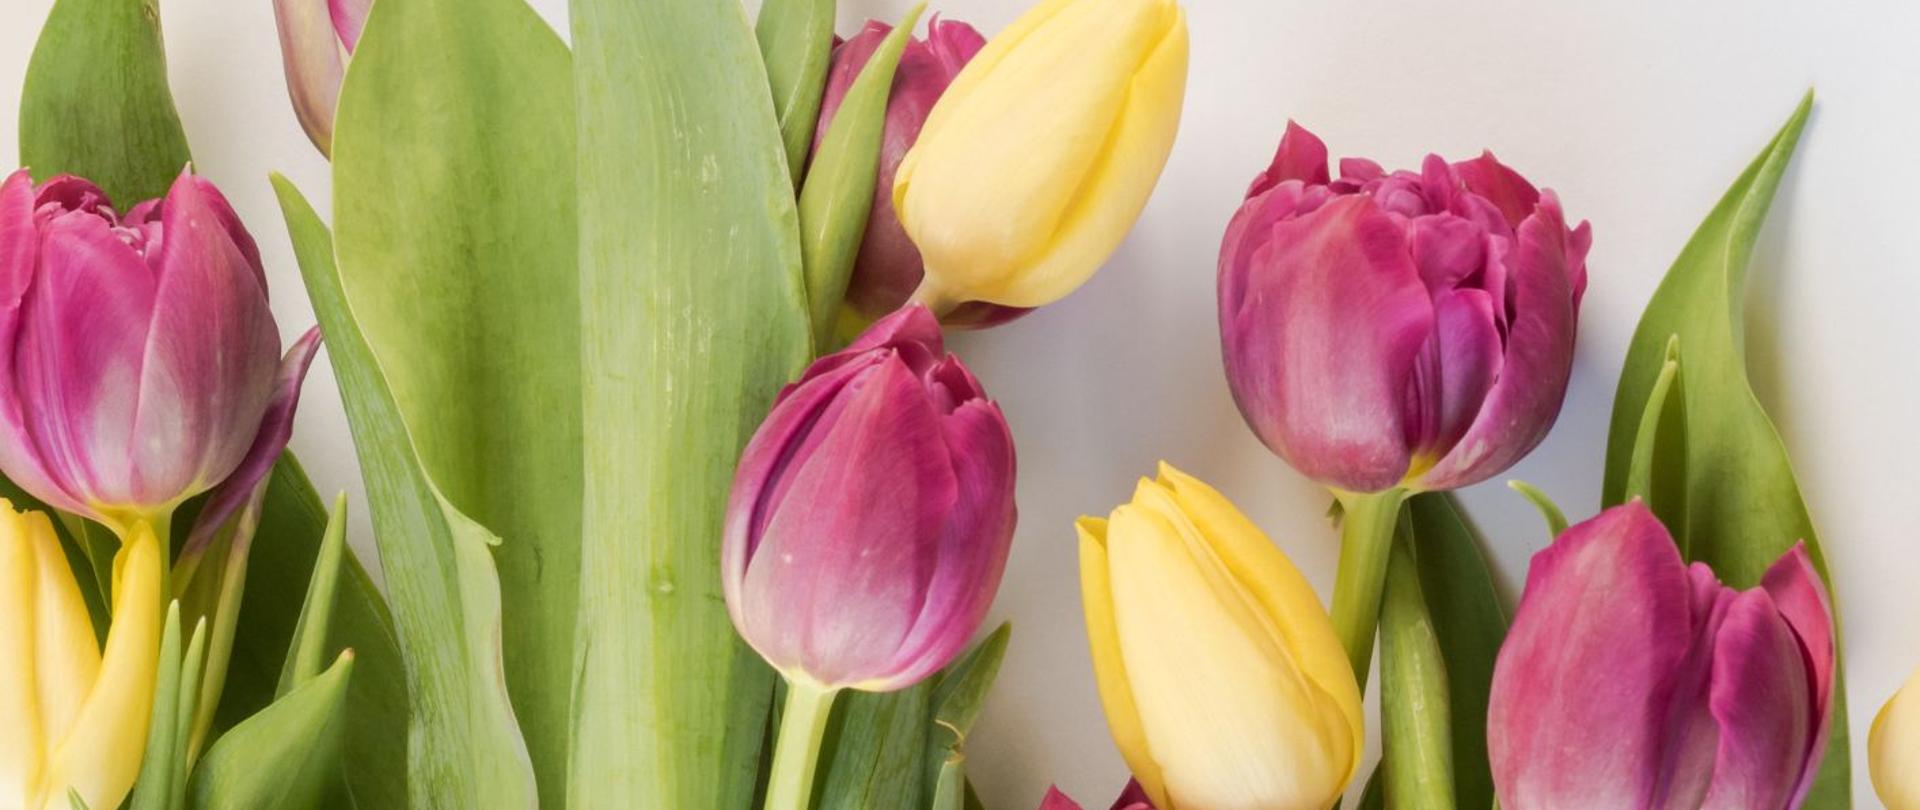 Bukiet tulipanów na tle białej planszy.